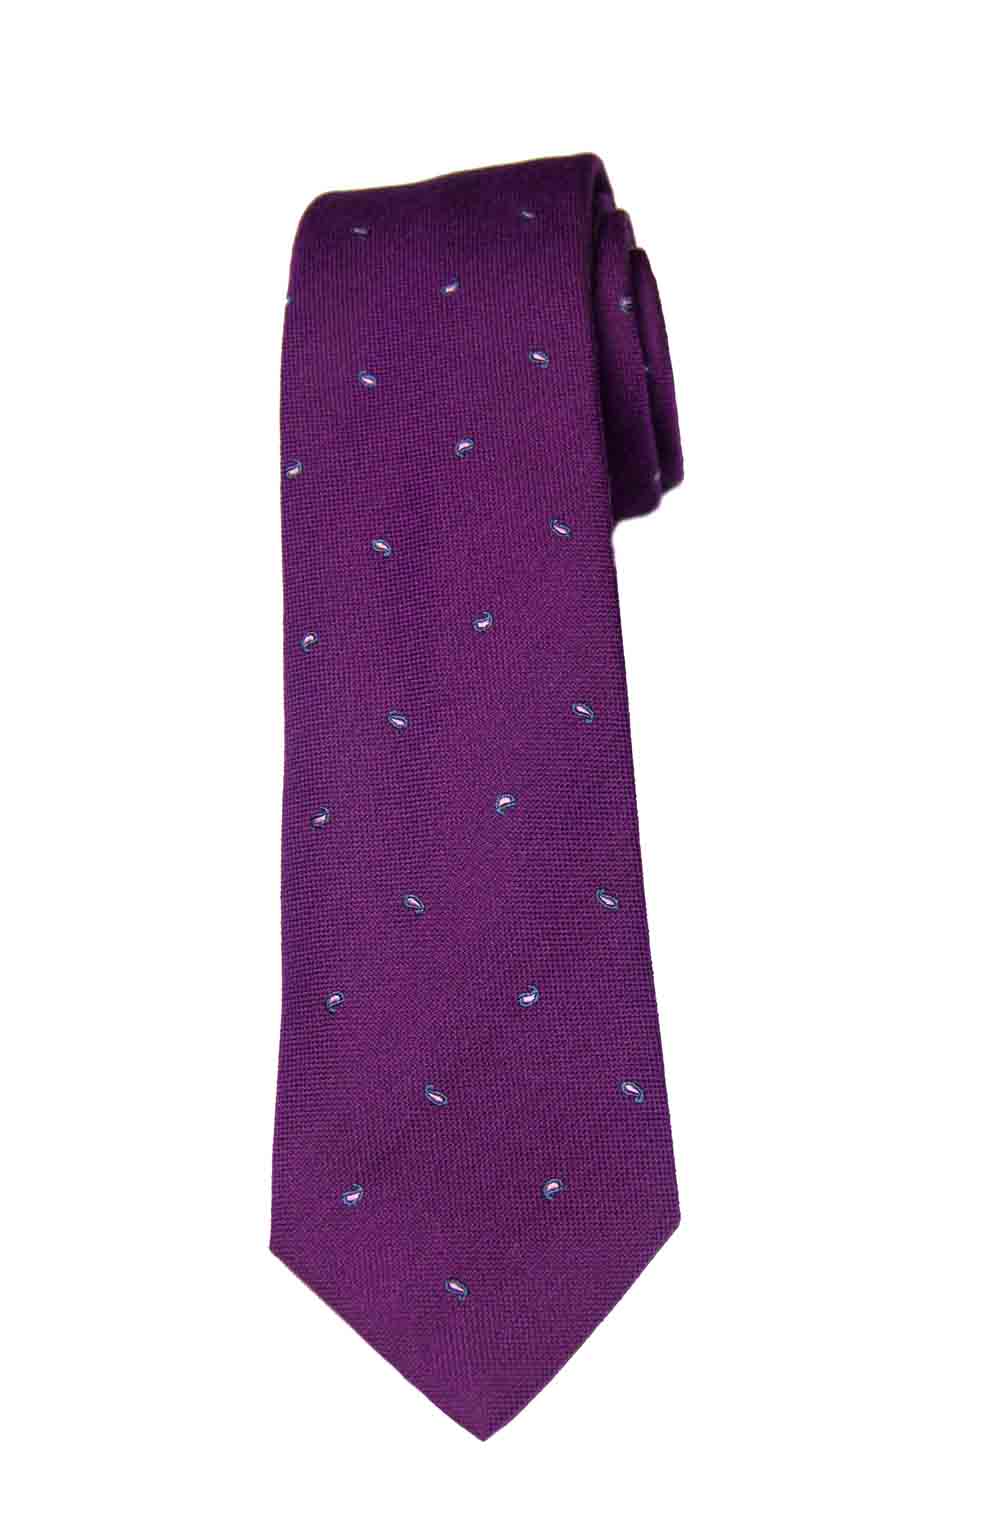 Paul Smith Tie Necktie Wool Silk Purple Black Pink Tear Drop Pattern Men's